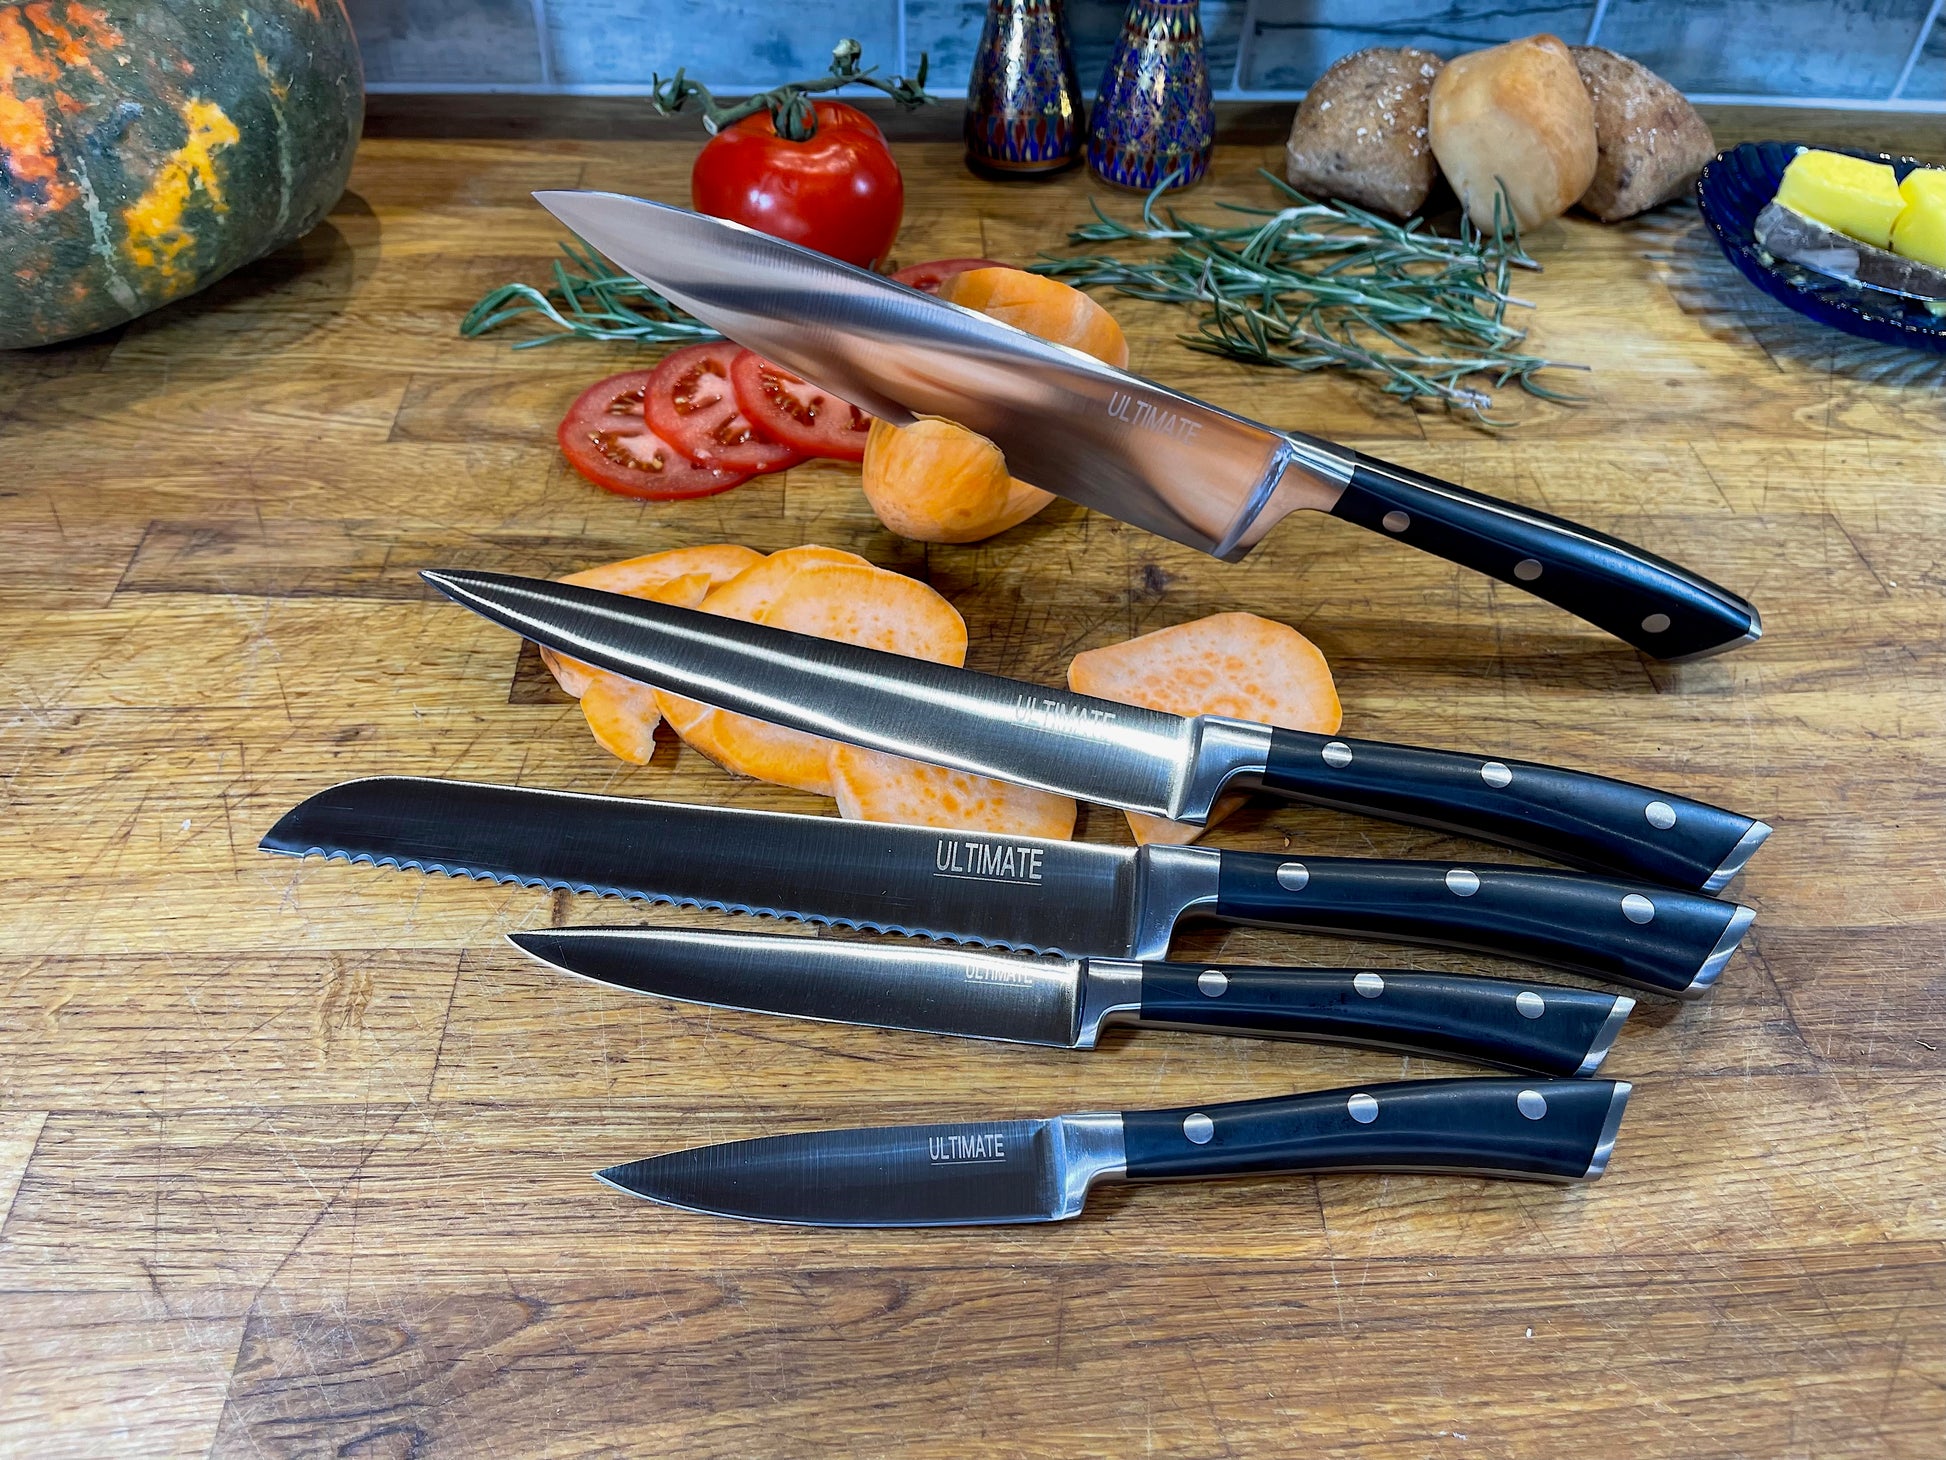 ULTIMATE Knife Set & Block – The Ultimate Knife Set